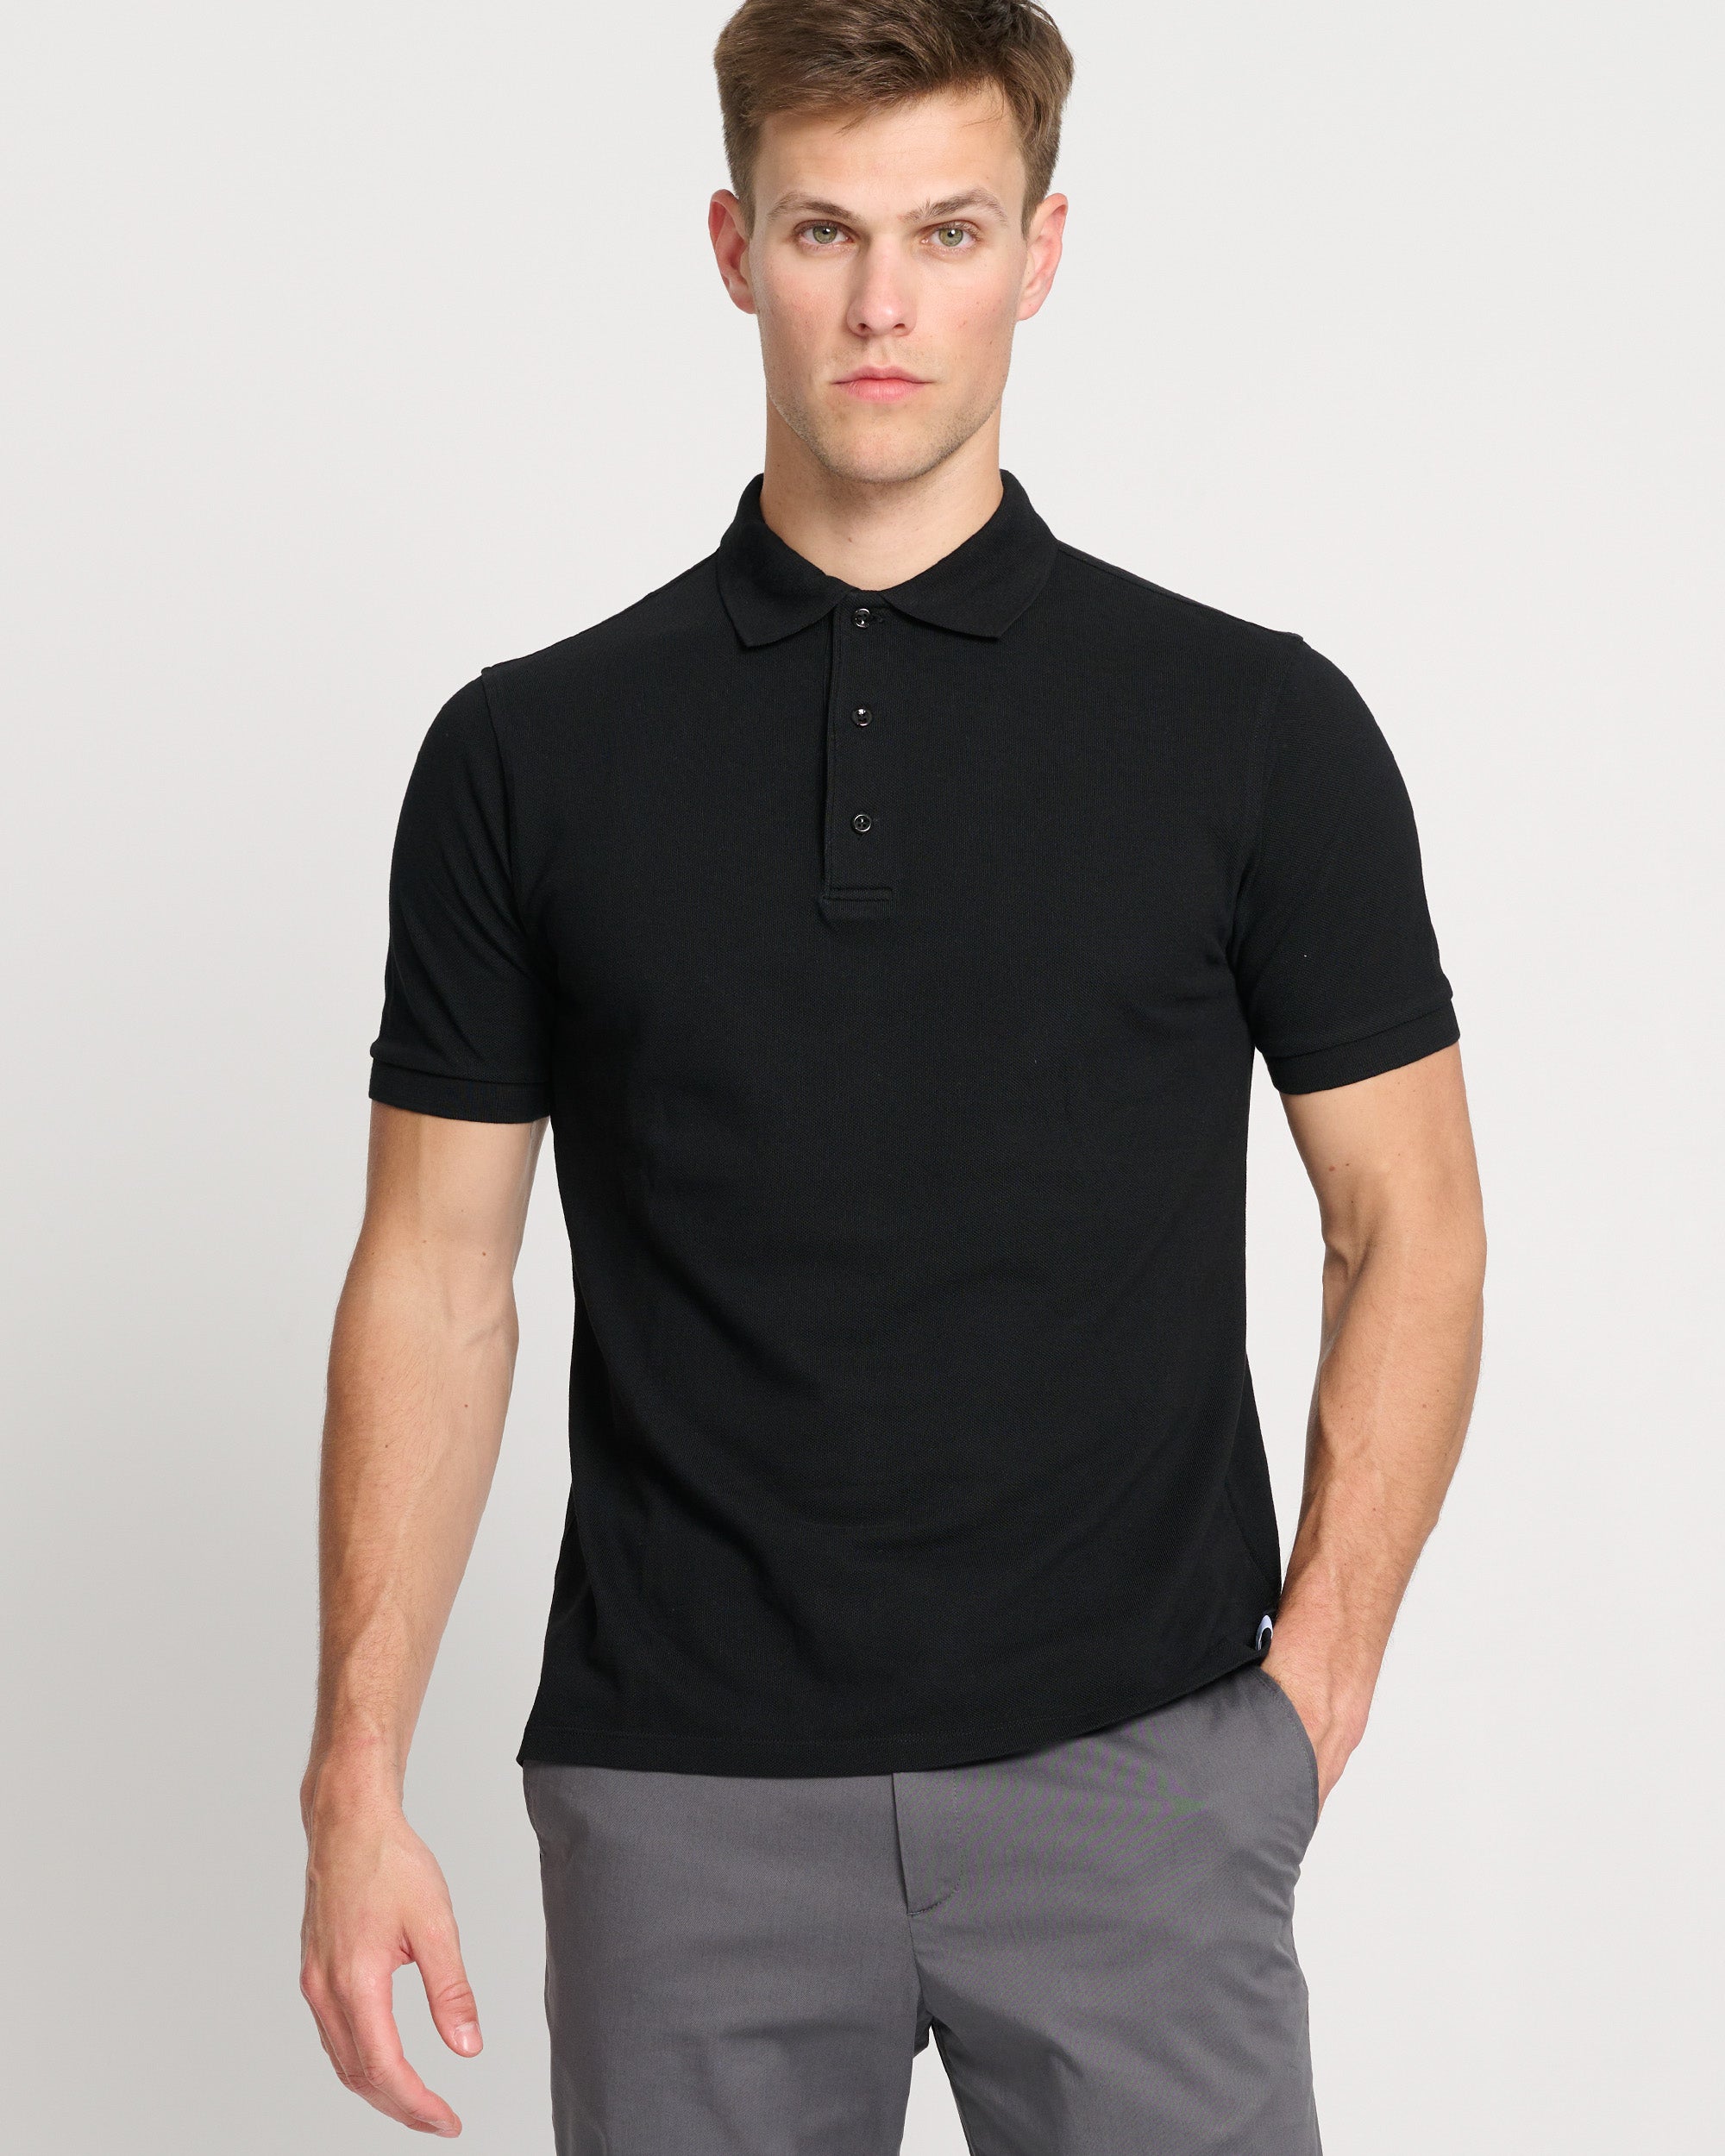 The Perfect Polo Shirt for Men | Organic Piqué Cotton Polo in Black